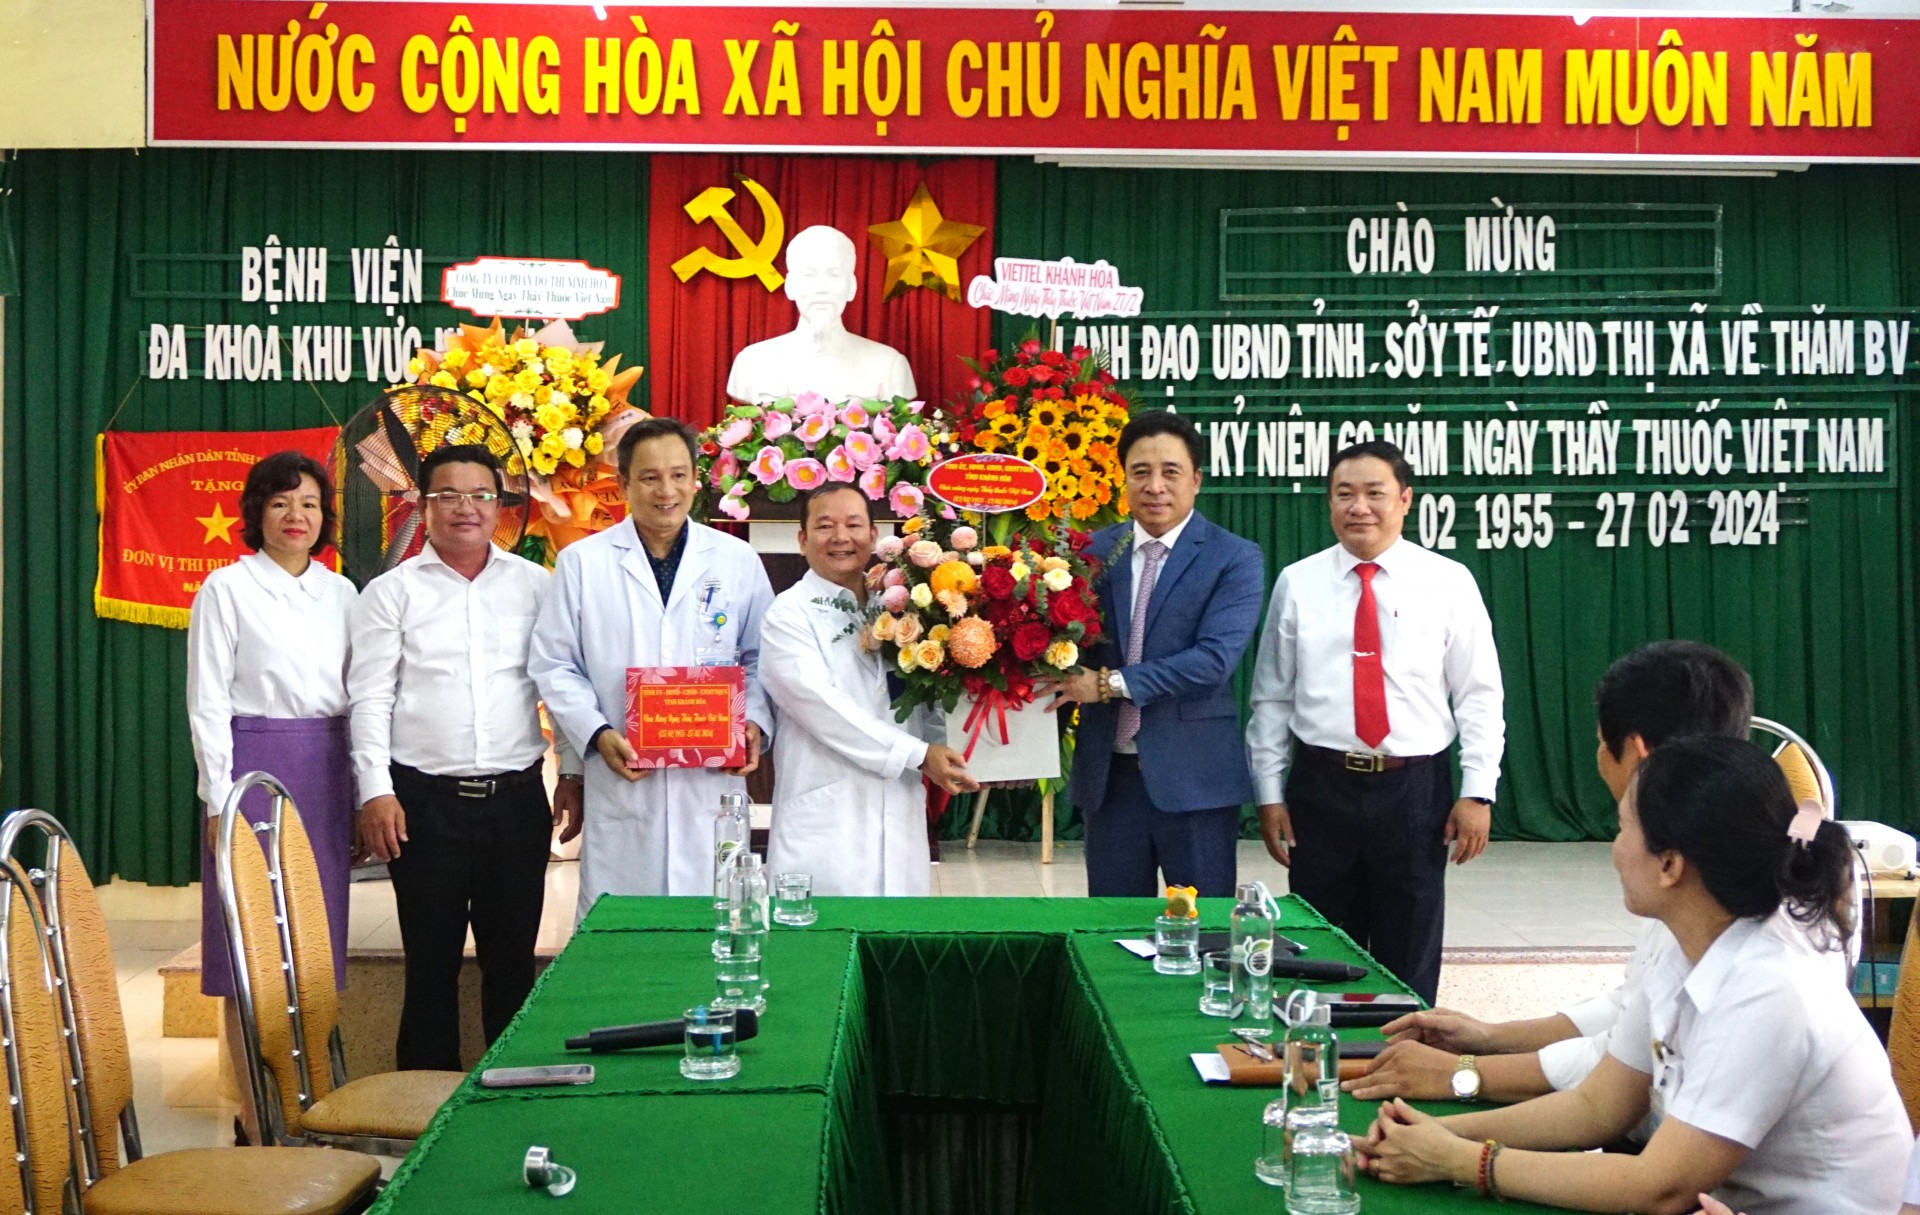 Đồng chí Nguyễn Khắc Toàn tặng hoa và quà cho tập thể Bệnh viện Đa khoa khu vực Ninh Hòa